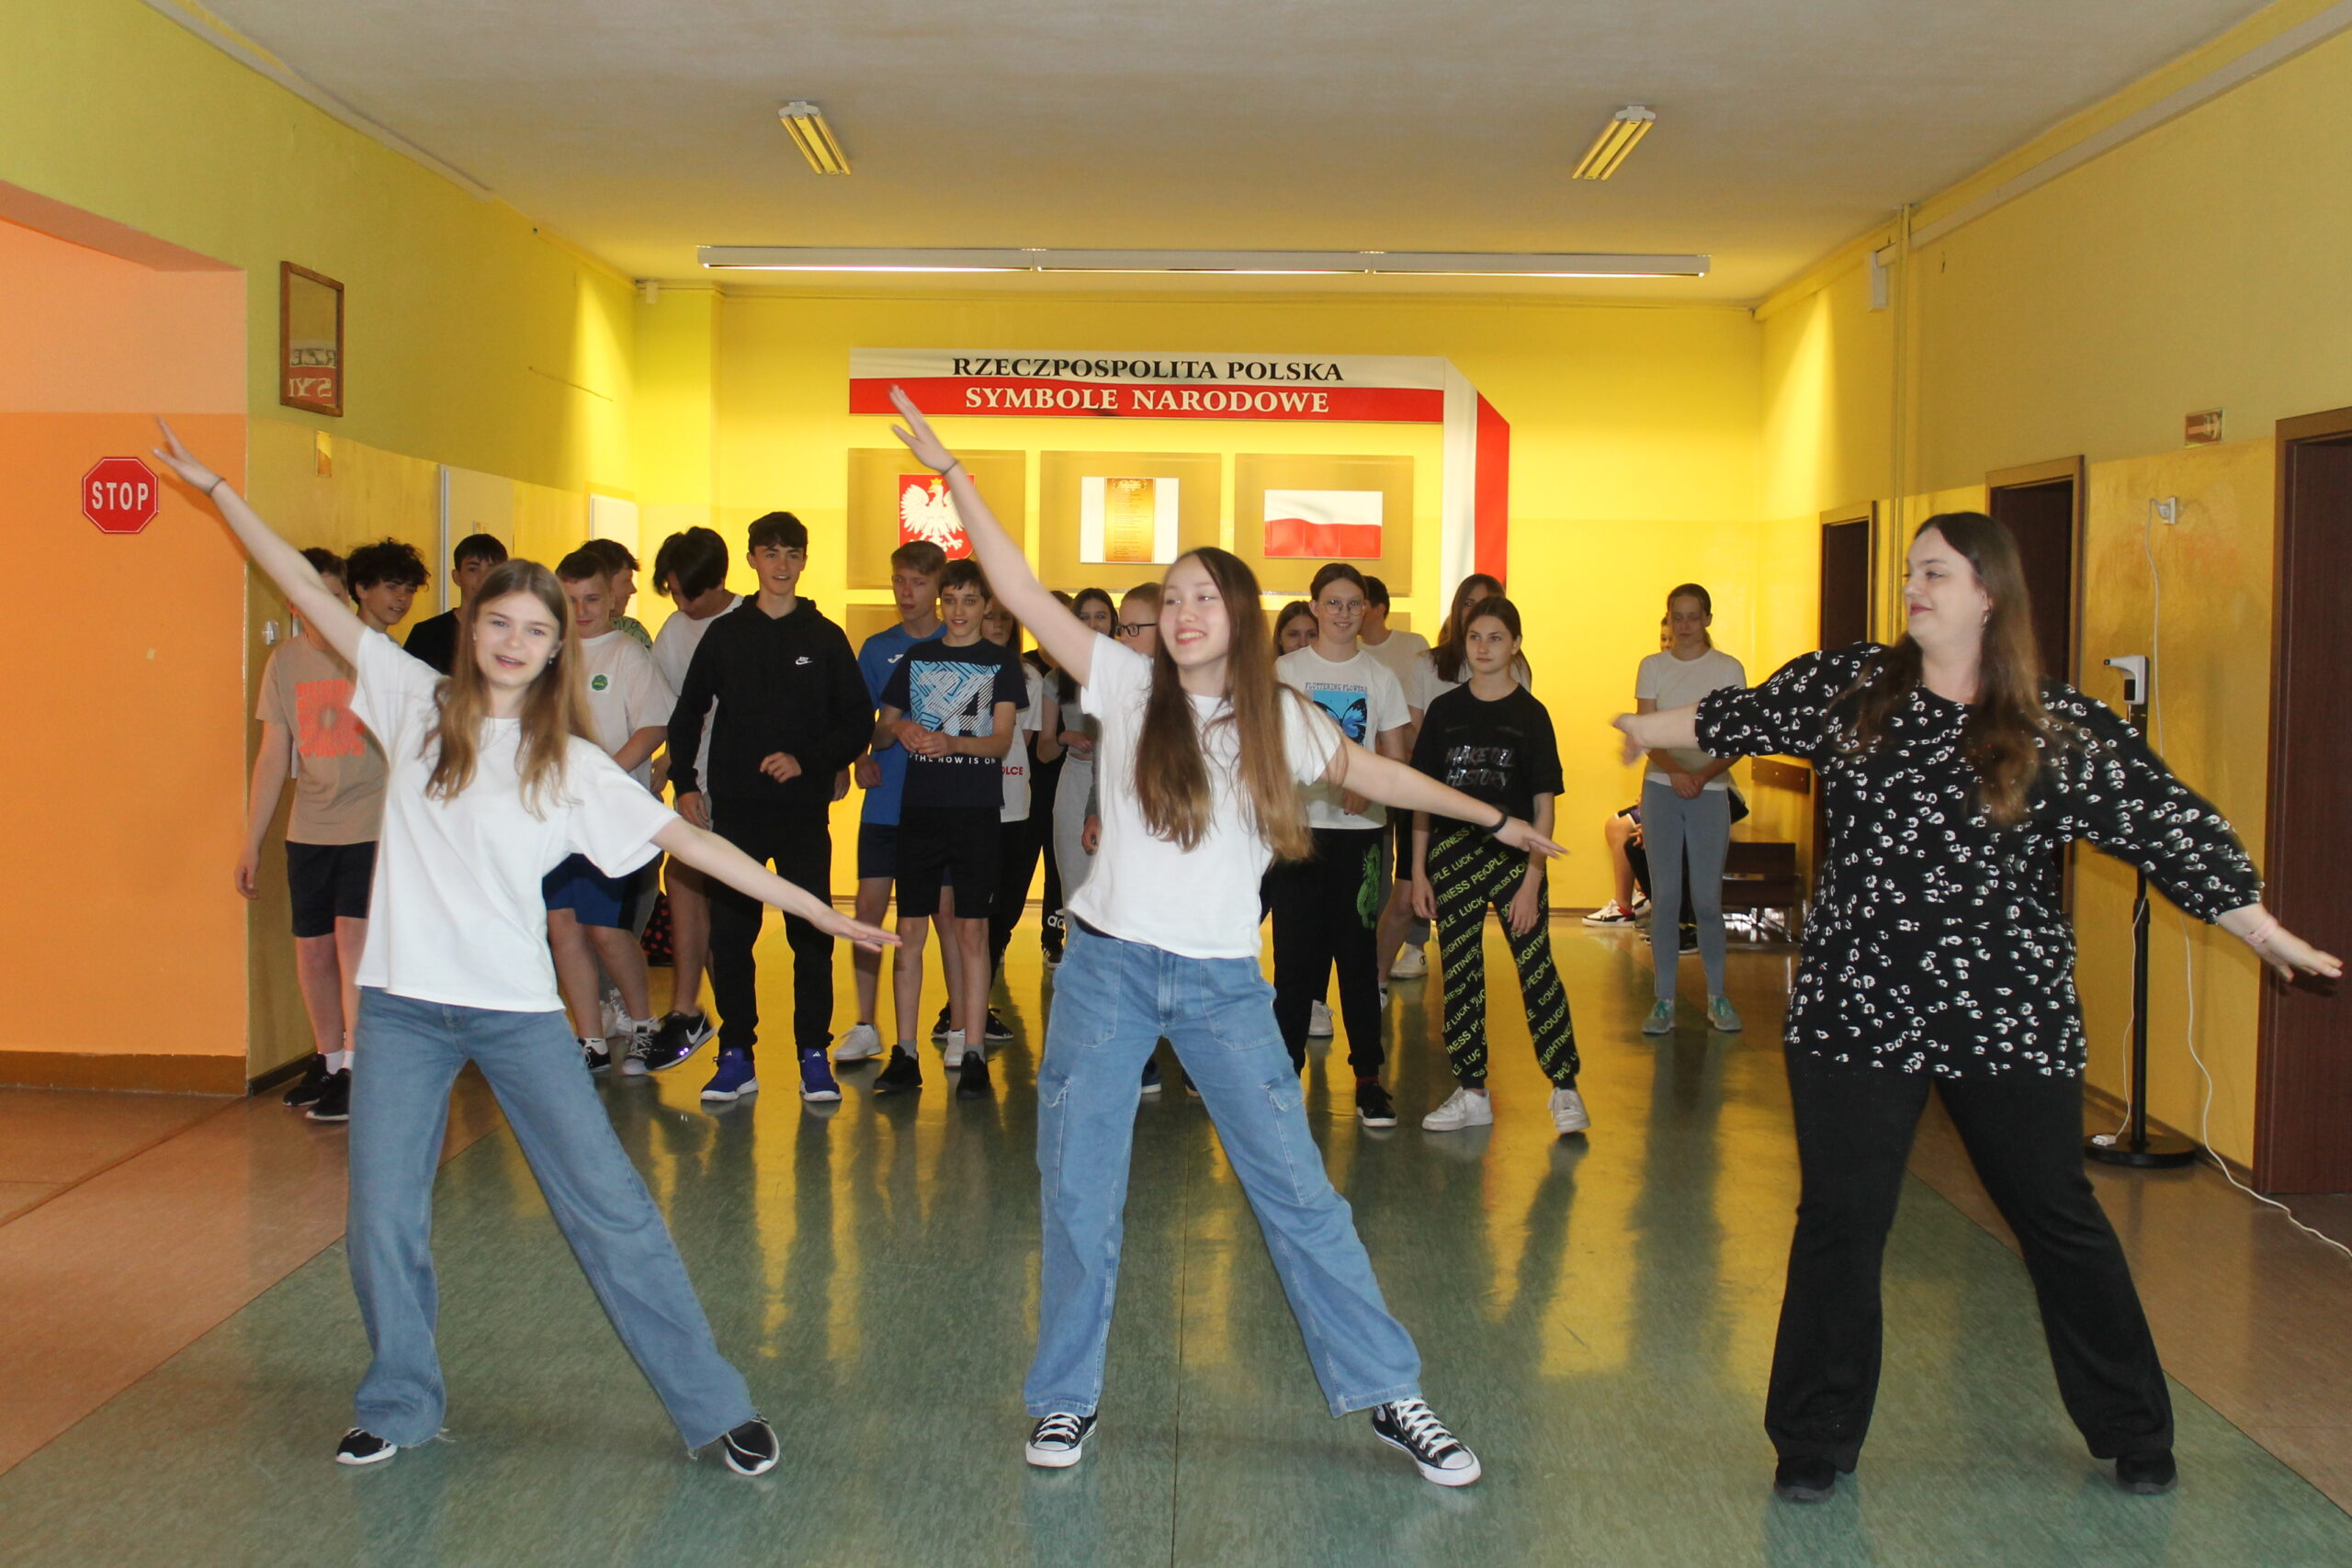 Święto Szkoły maj 2023. Uczniowie po uroczystej akademii biorą udział w zabawach na terenie szkoły - taniec